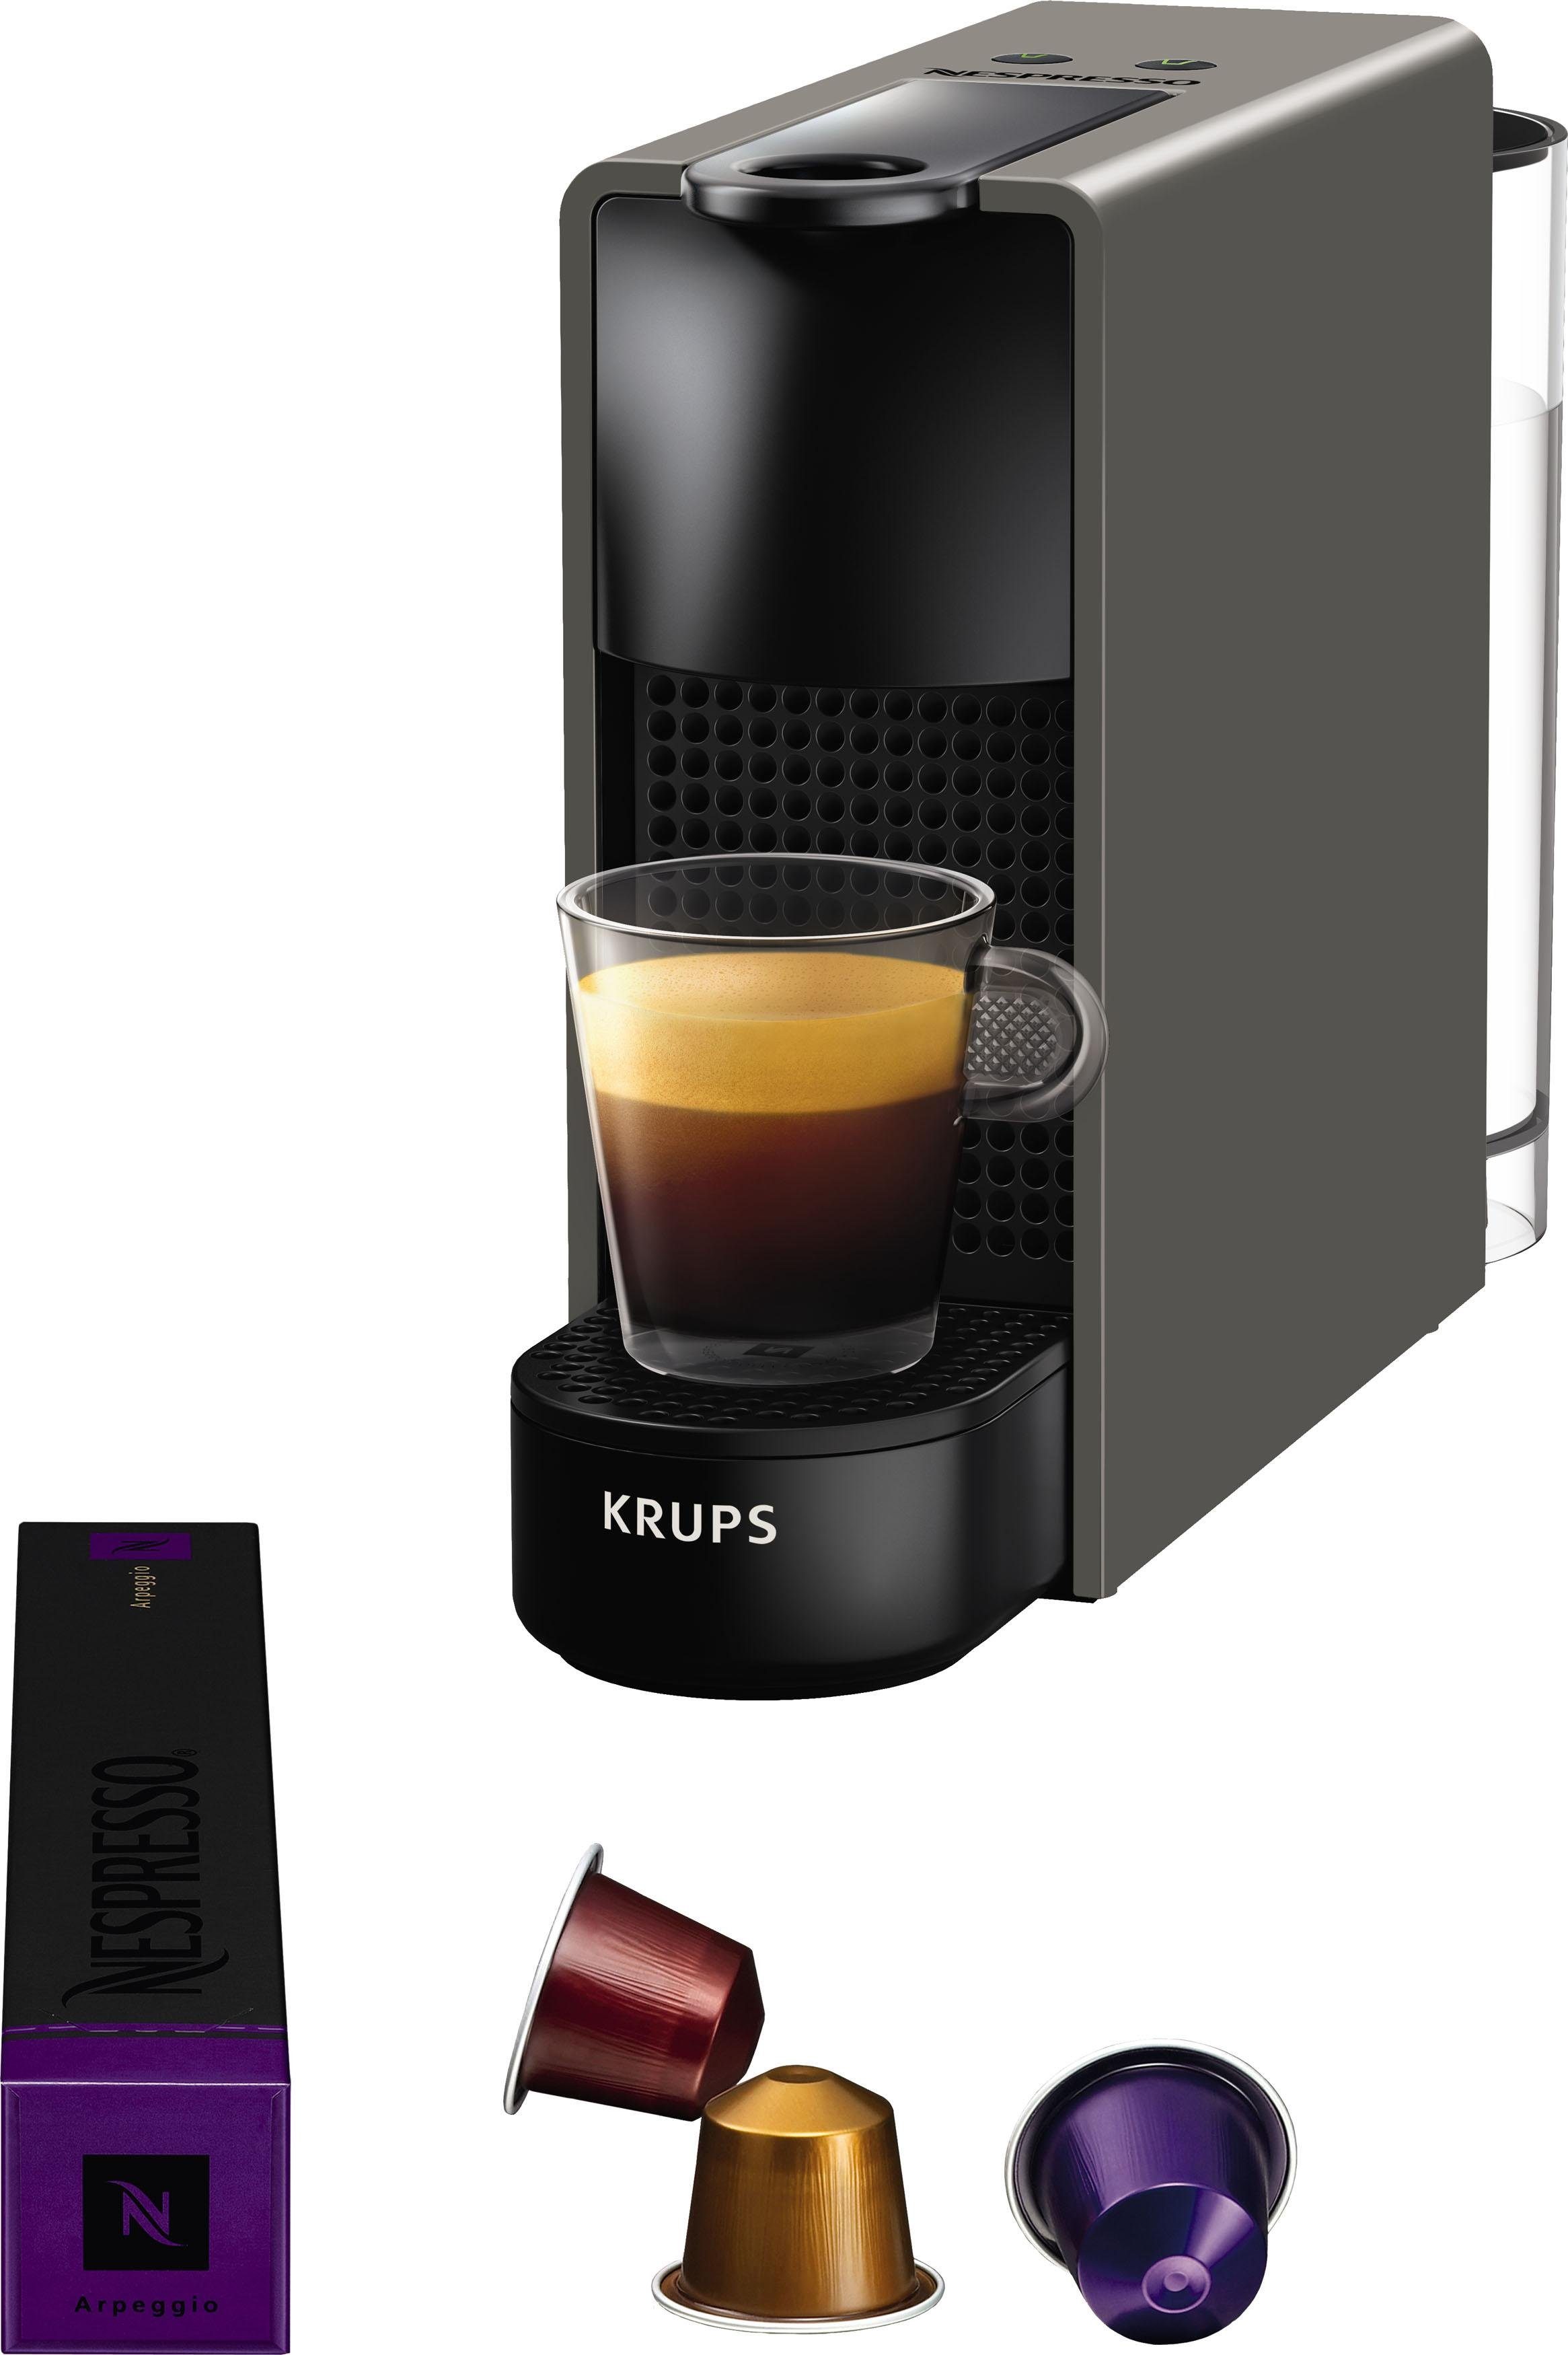 Wassertank: Nespresso Willkommenspaket inkl. XN110B Kapselmaschine Mini Krups, 14 L, 0,6 mit von Kapseln Essenza